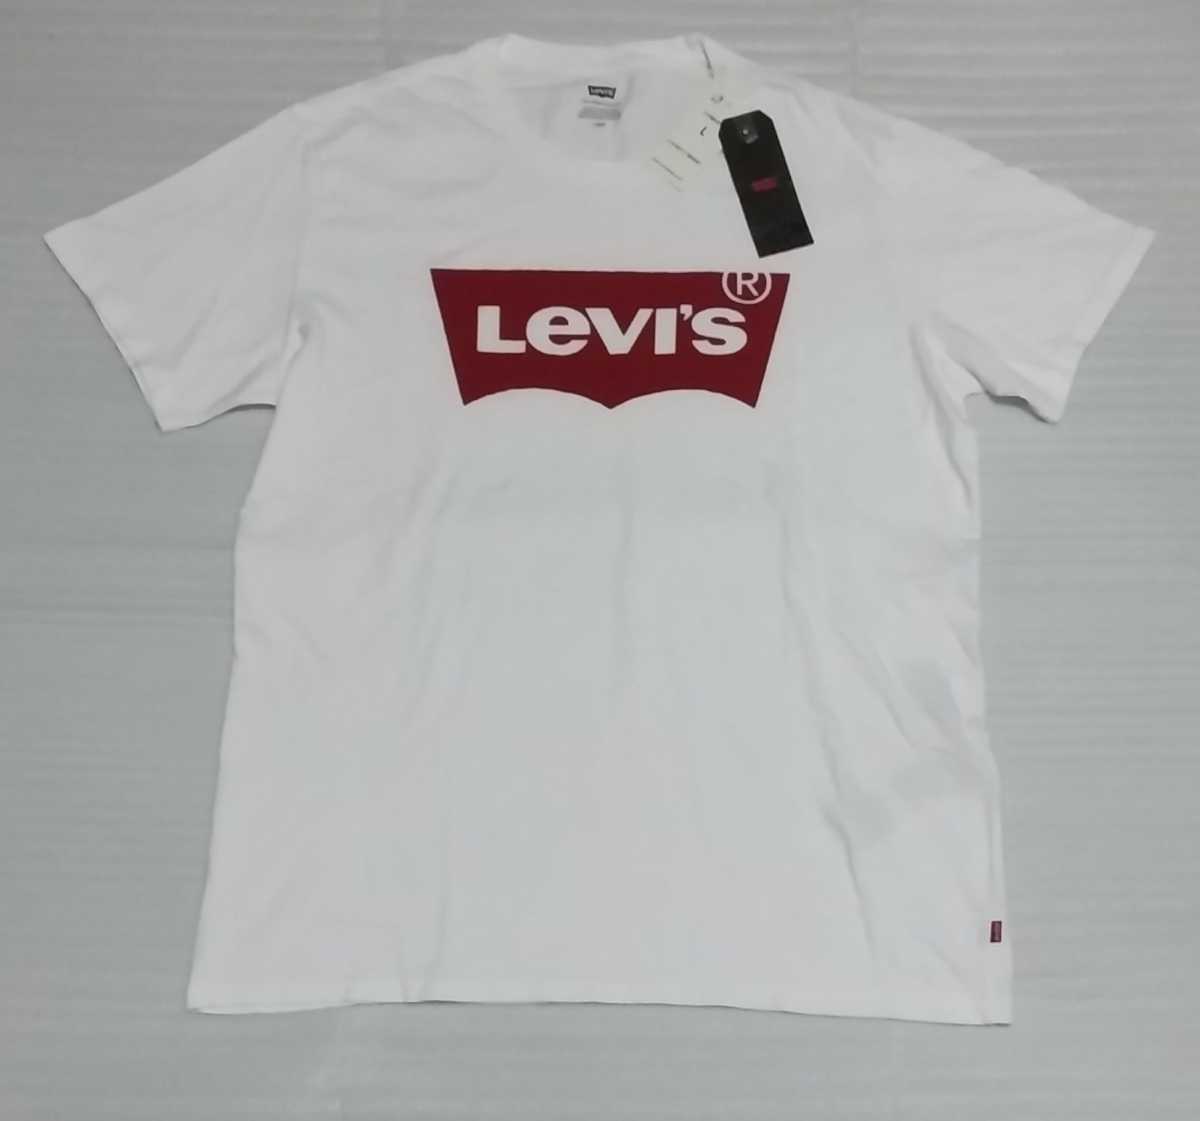 未使用 LEVI'S LEVIS リーバイス半袖バットウイング ロゴTシャツ トップス ティー ホワイト白レッド赤メンズ サイズL ジャパンXL 177830140_※未使用品です。大きな汚れ等はありません